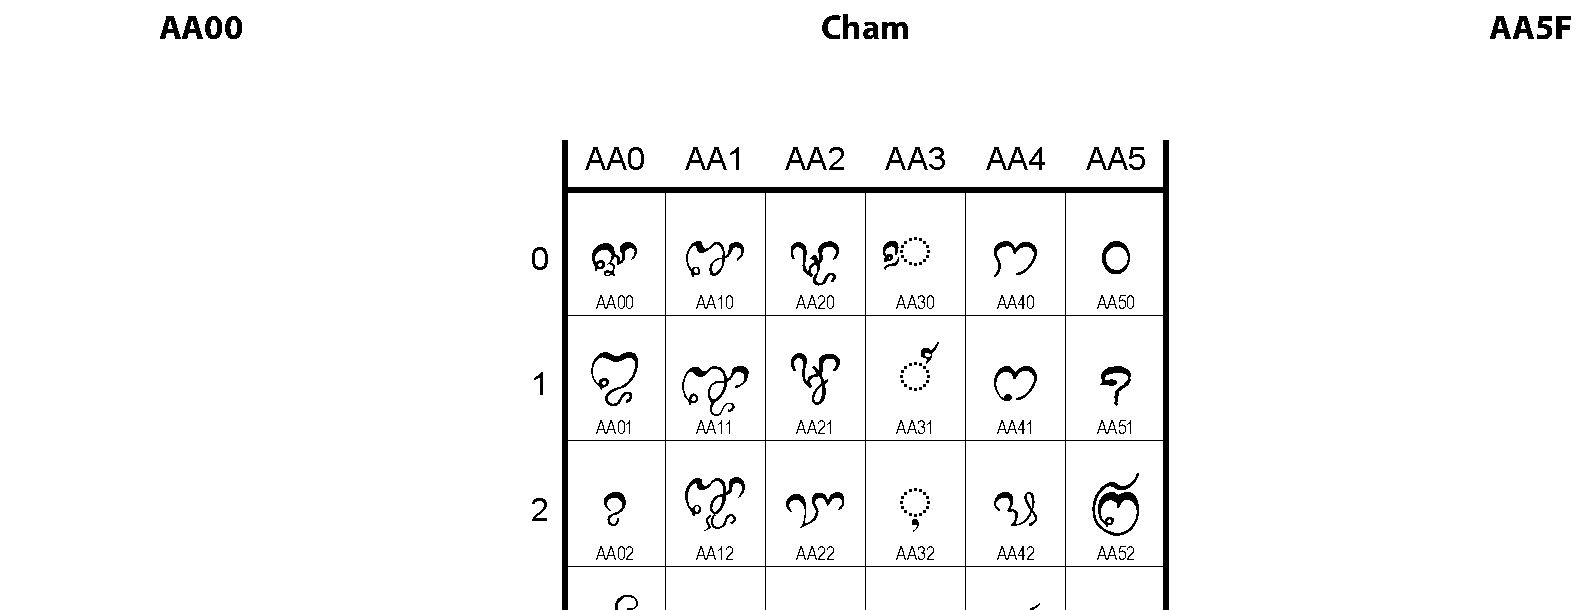 Unicode - Cham